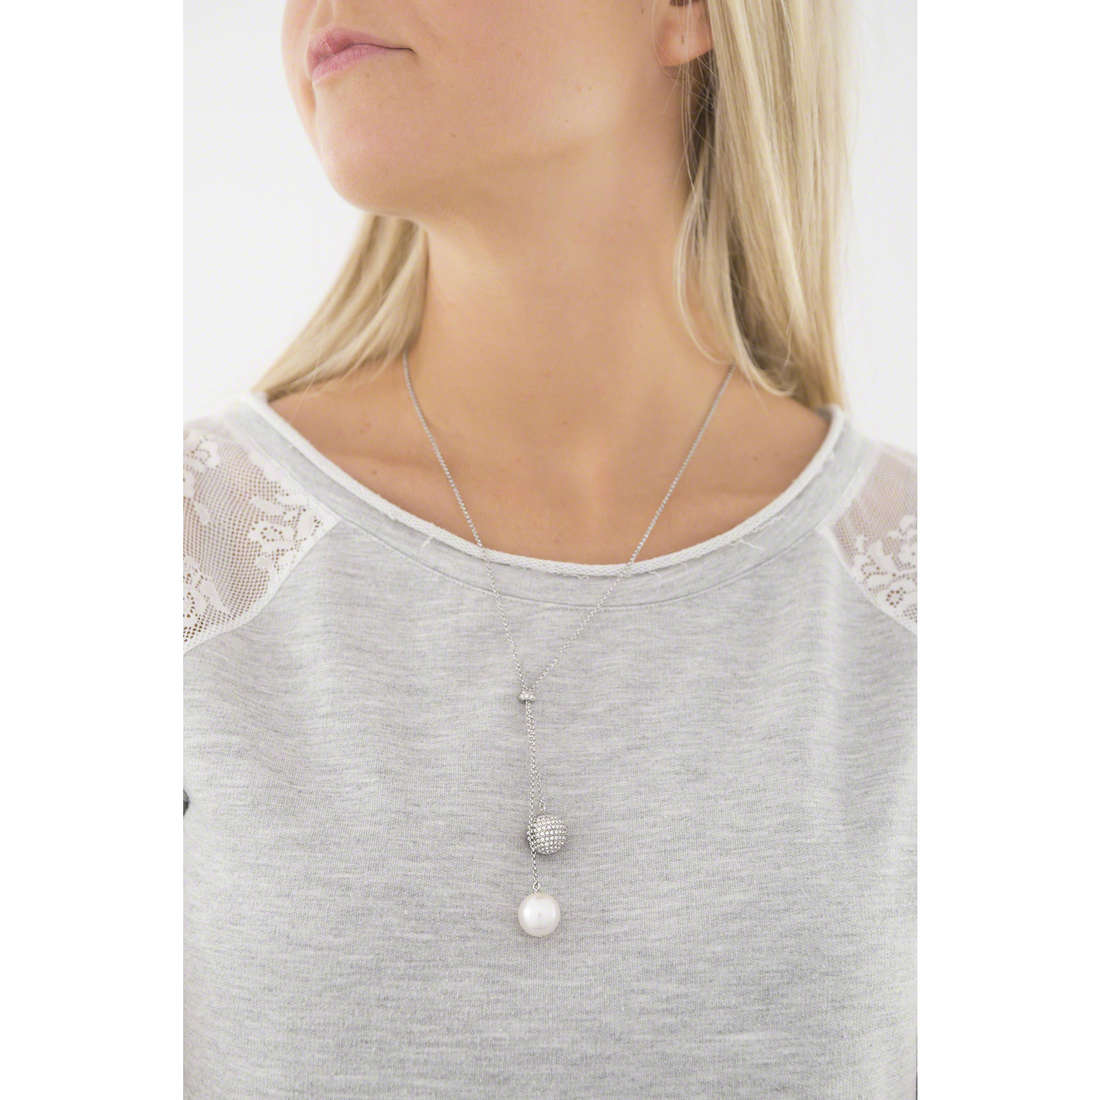 Emporio Armani necklaces woman EGS2235040 wearing